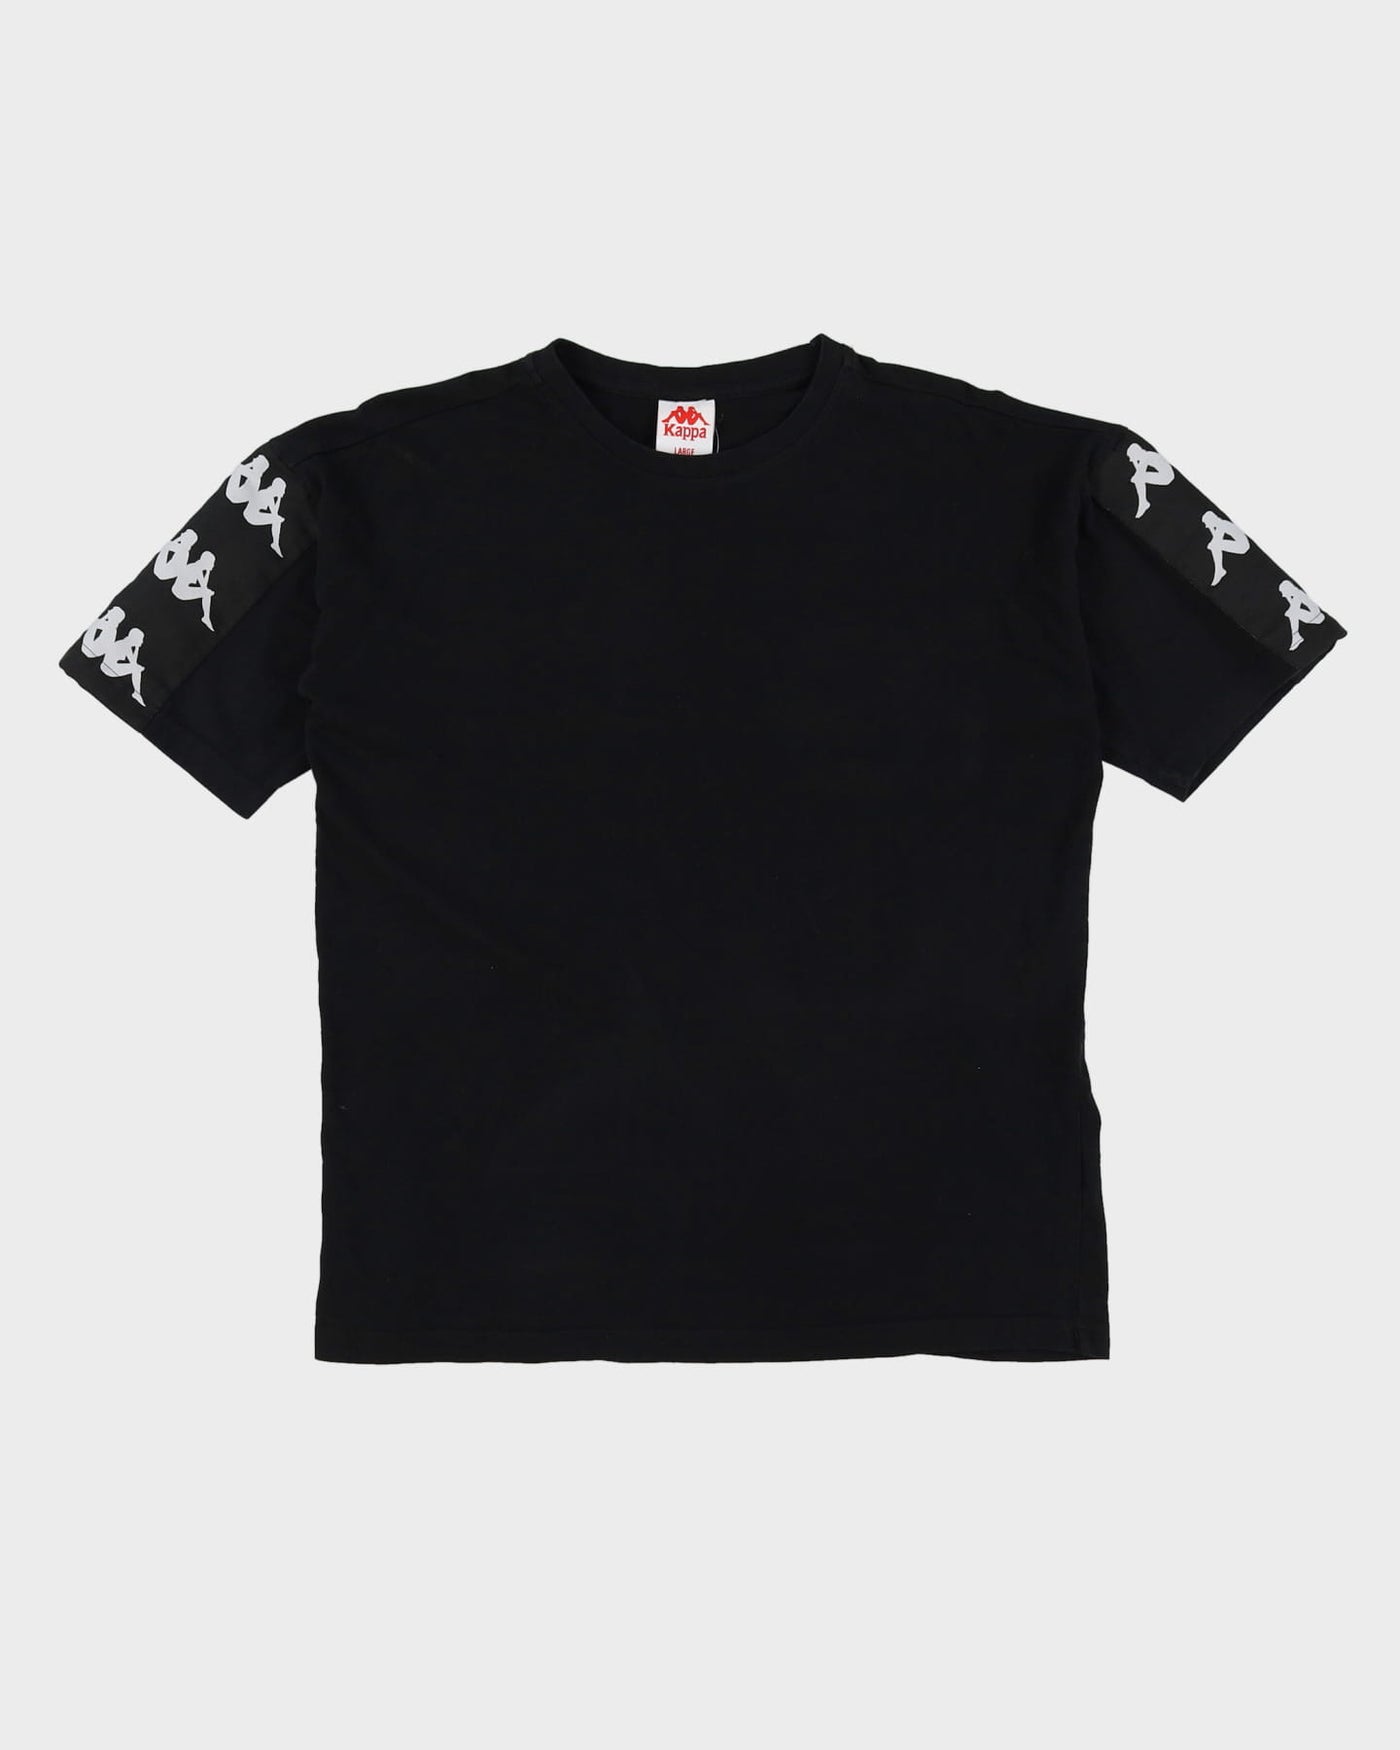 Kappa Black T-Shirt - L